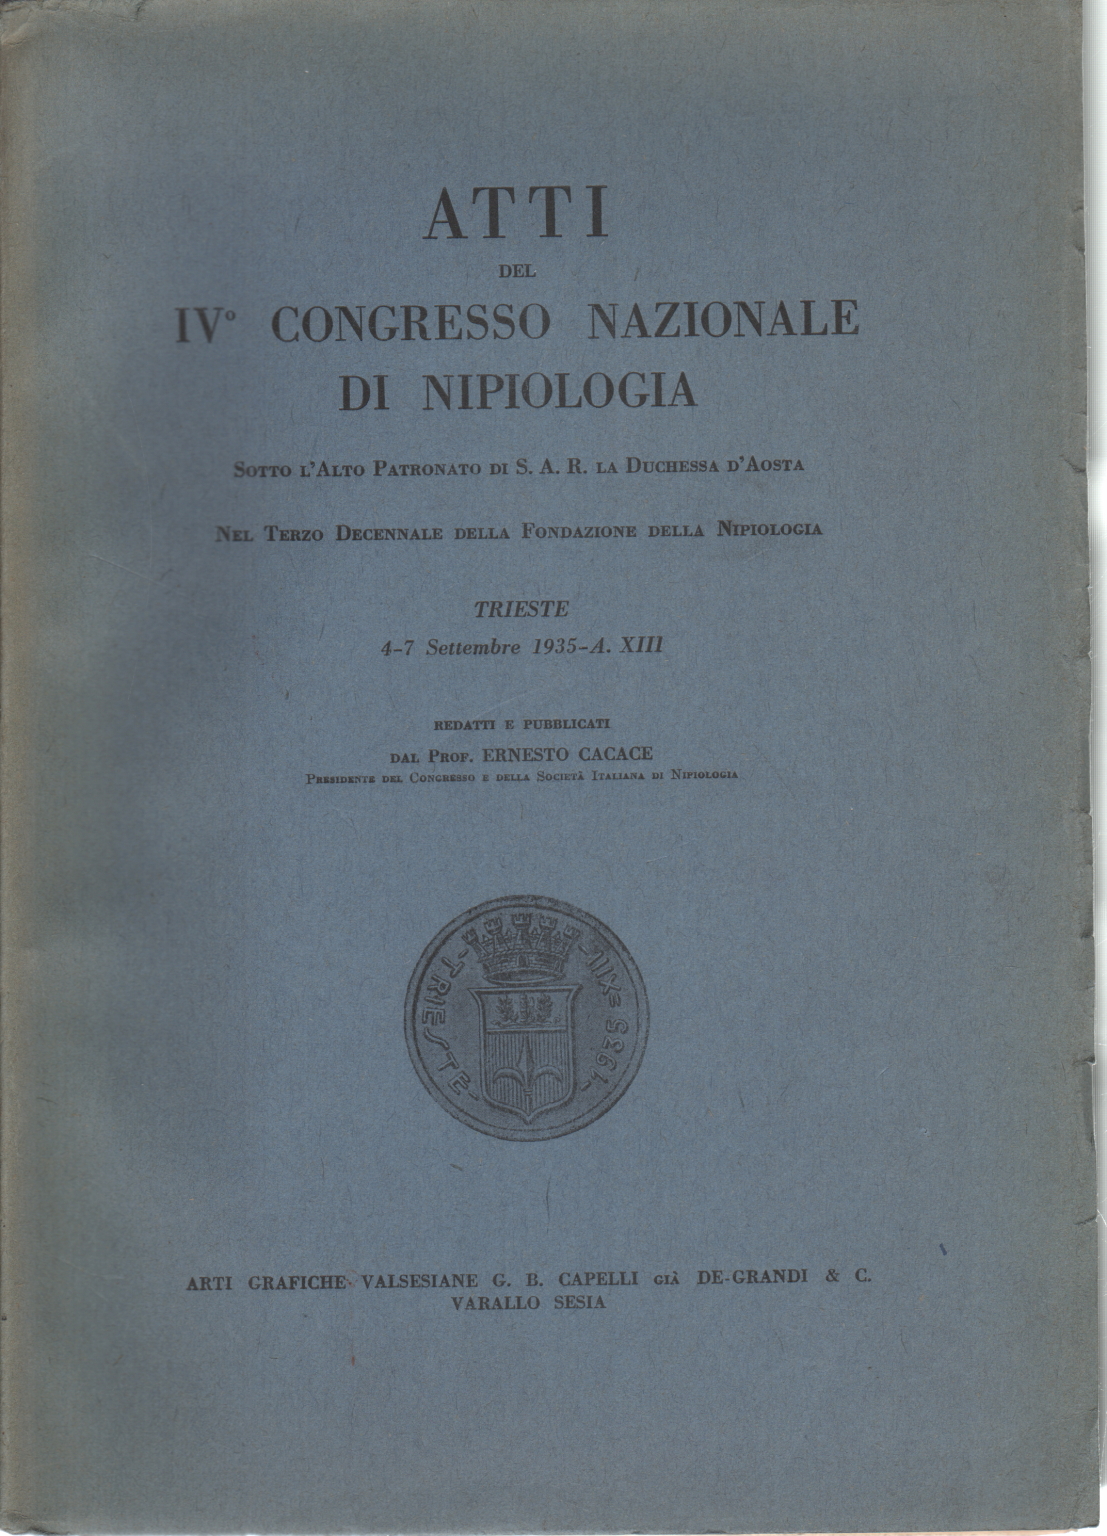 Actes de la IVº Congrès de la National Nipiologia, Ernesto Cacace